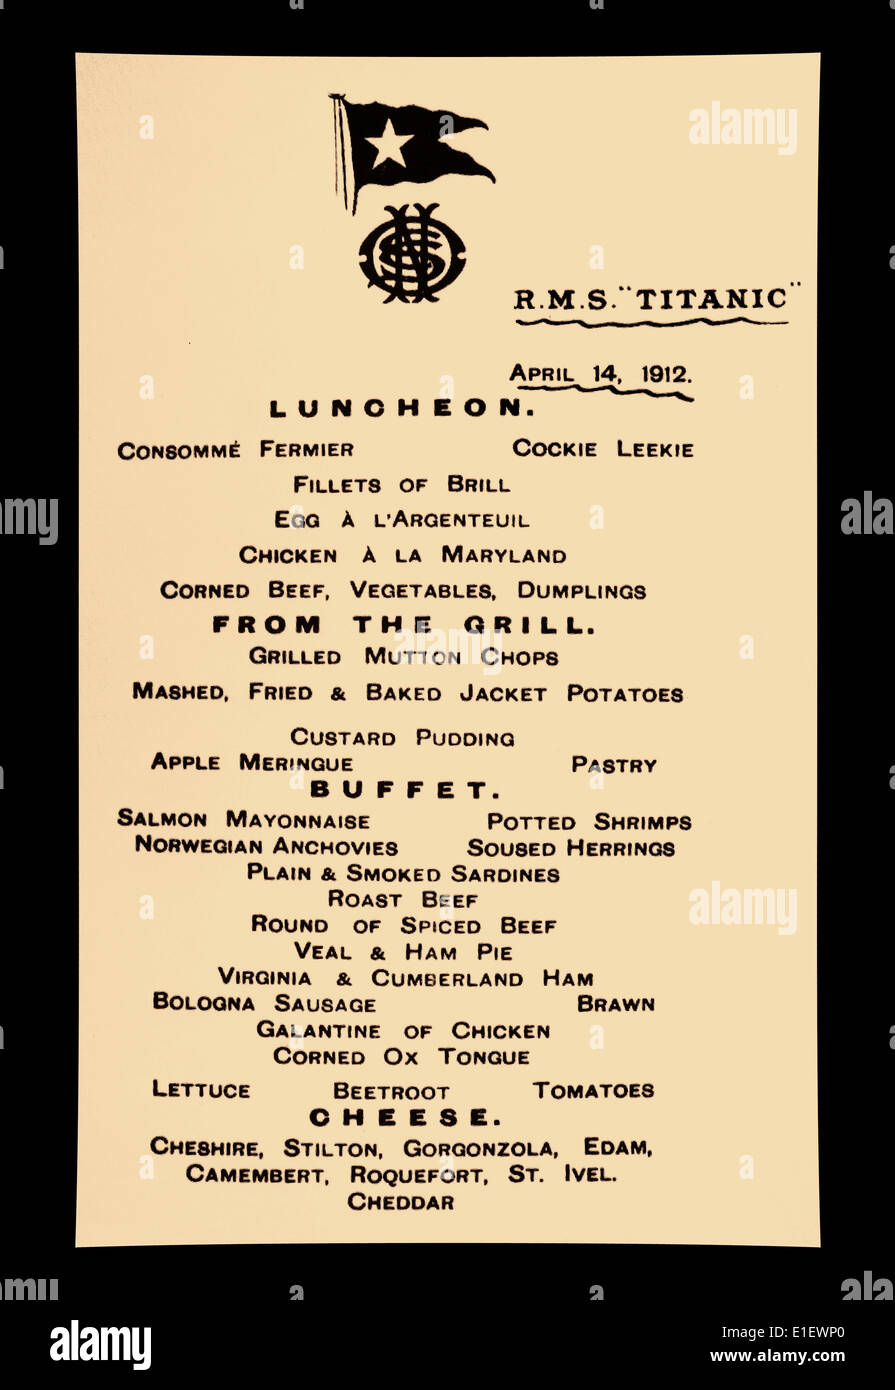 MENU TITANIC le 14 avril 1912 à bord du Titanic condamné, passagers de première classe déjeuner menu oeufs Argenteuil, poulet a la Maryland ..etc Banque D'Images